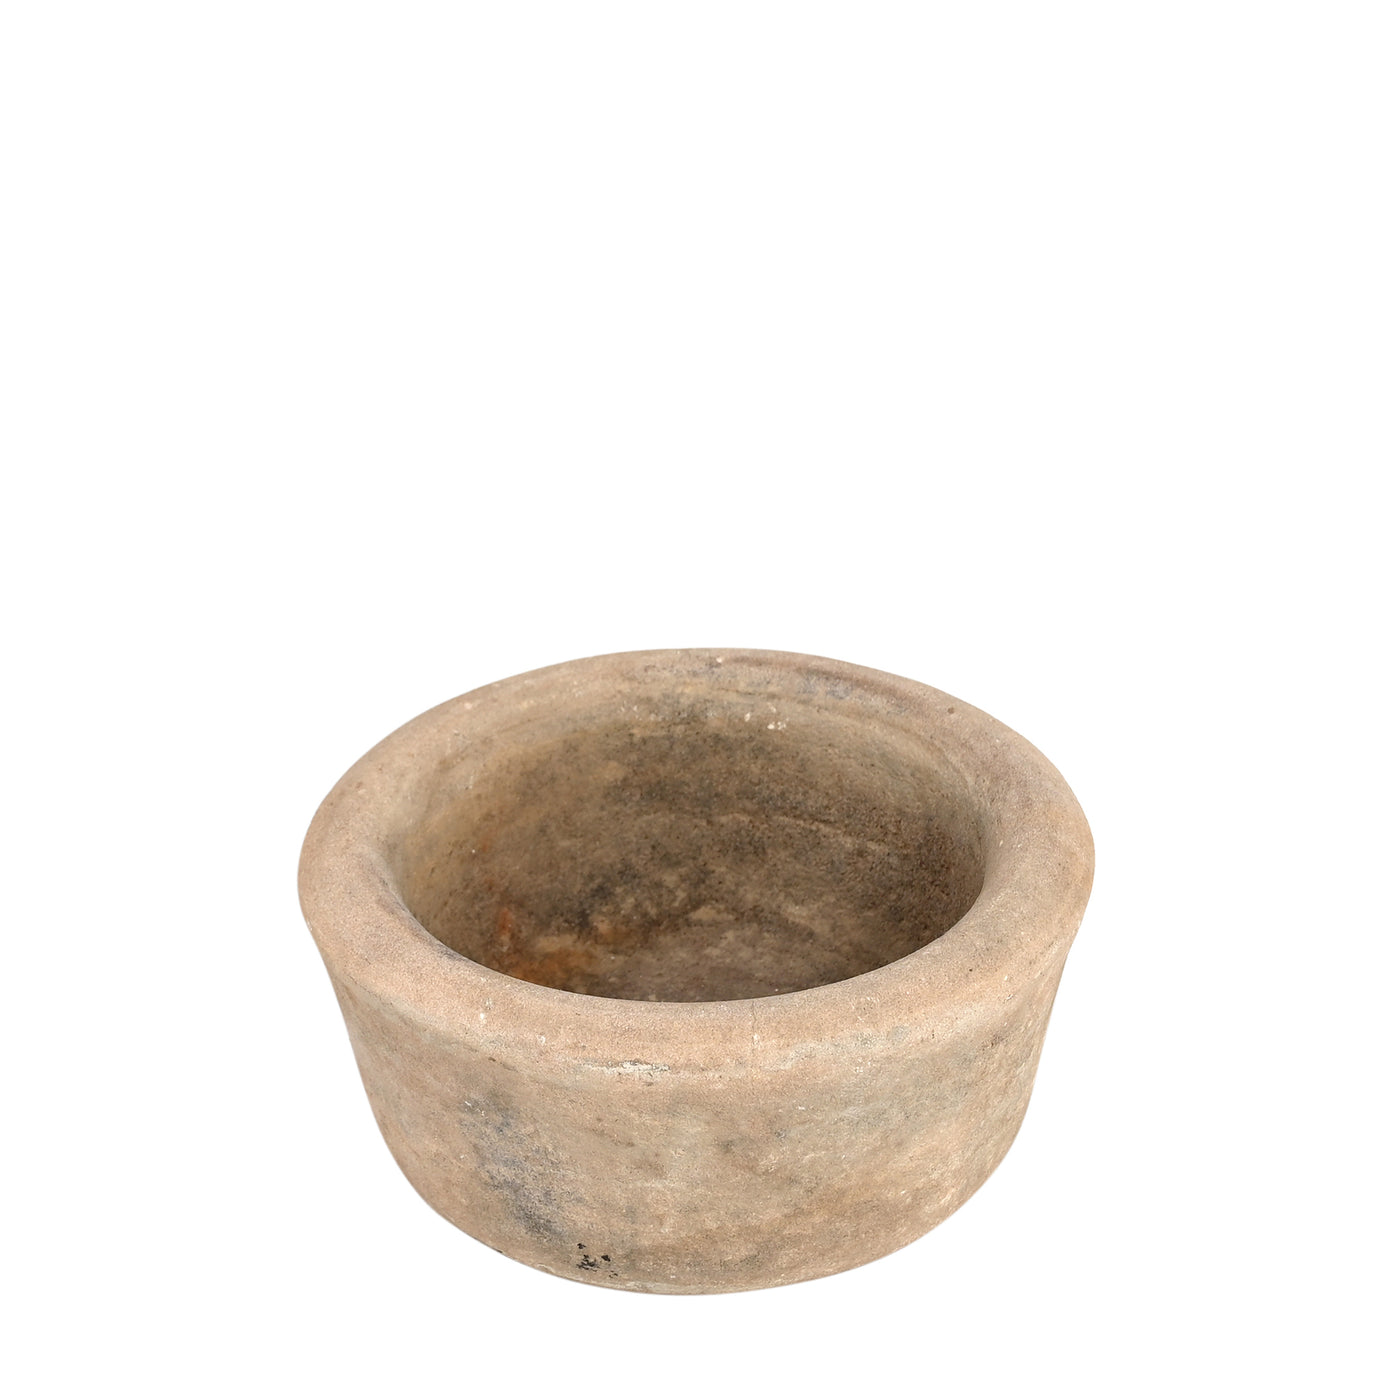 Devliya - Stone bowl n ° 5